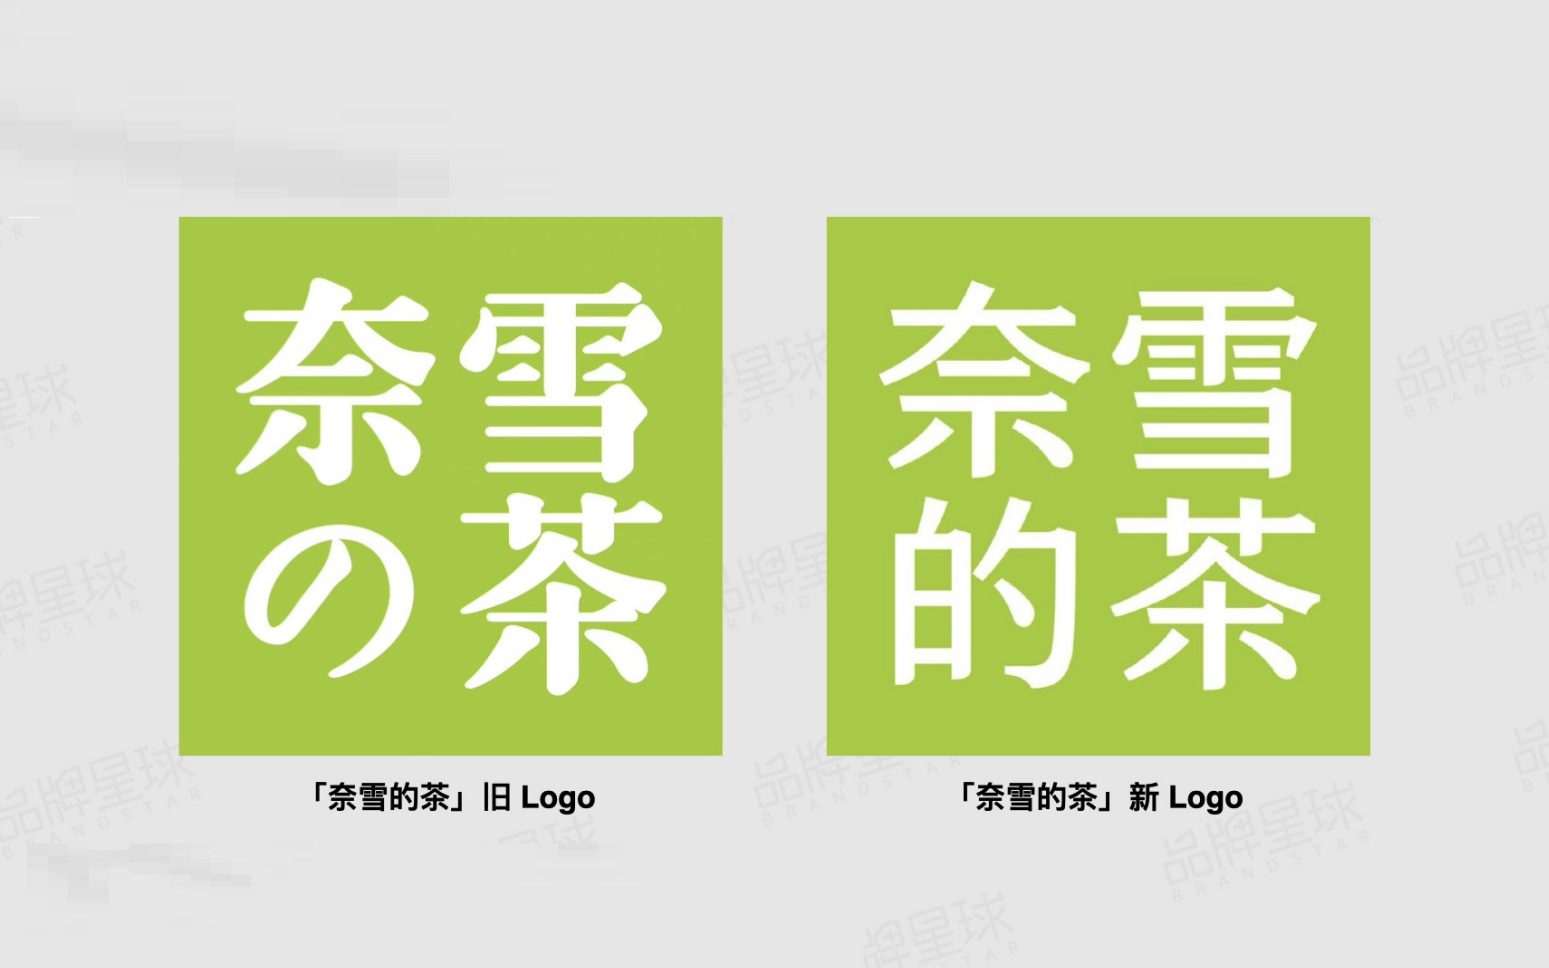 深圳品牌策划设计奈雪的茶 VI 升级， Logo “去日化”